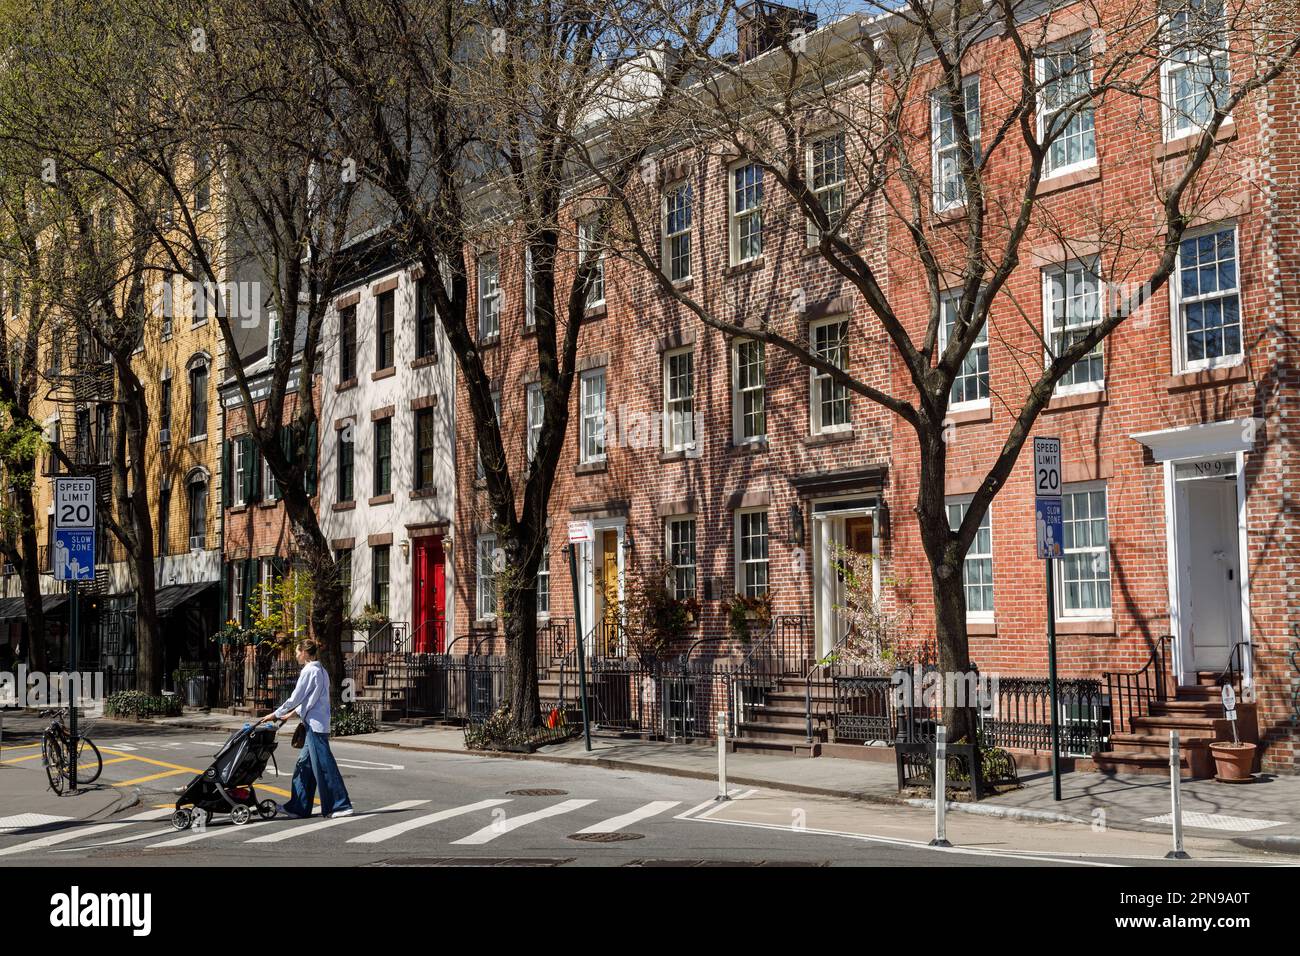 Commerce Street, nota anche come Cherry Lane, pittoresche case in mattoni a Greenwich Village, New York City. Foto Stock